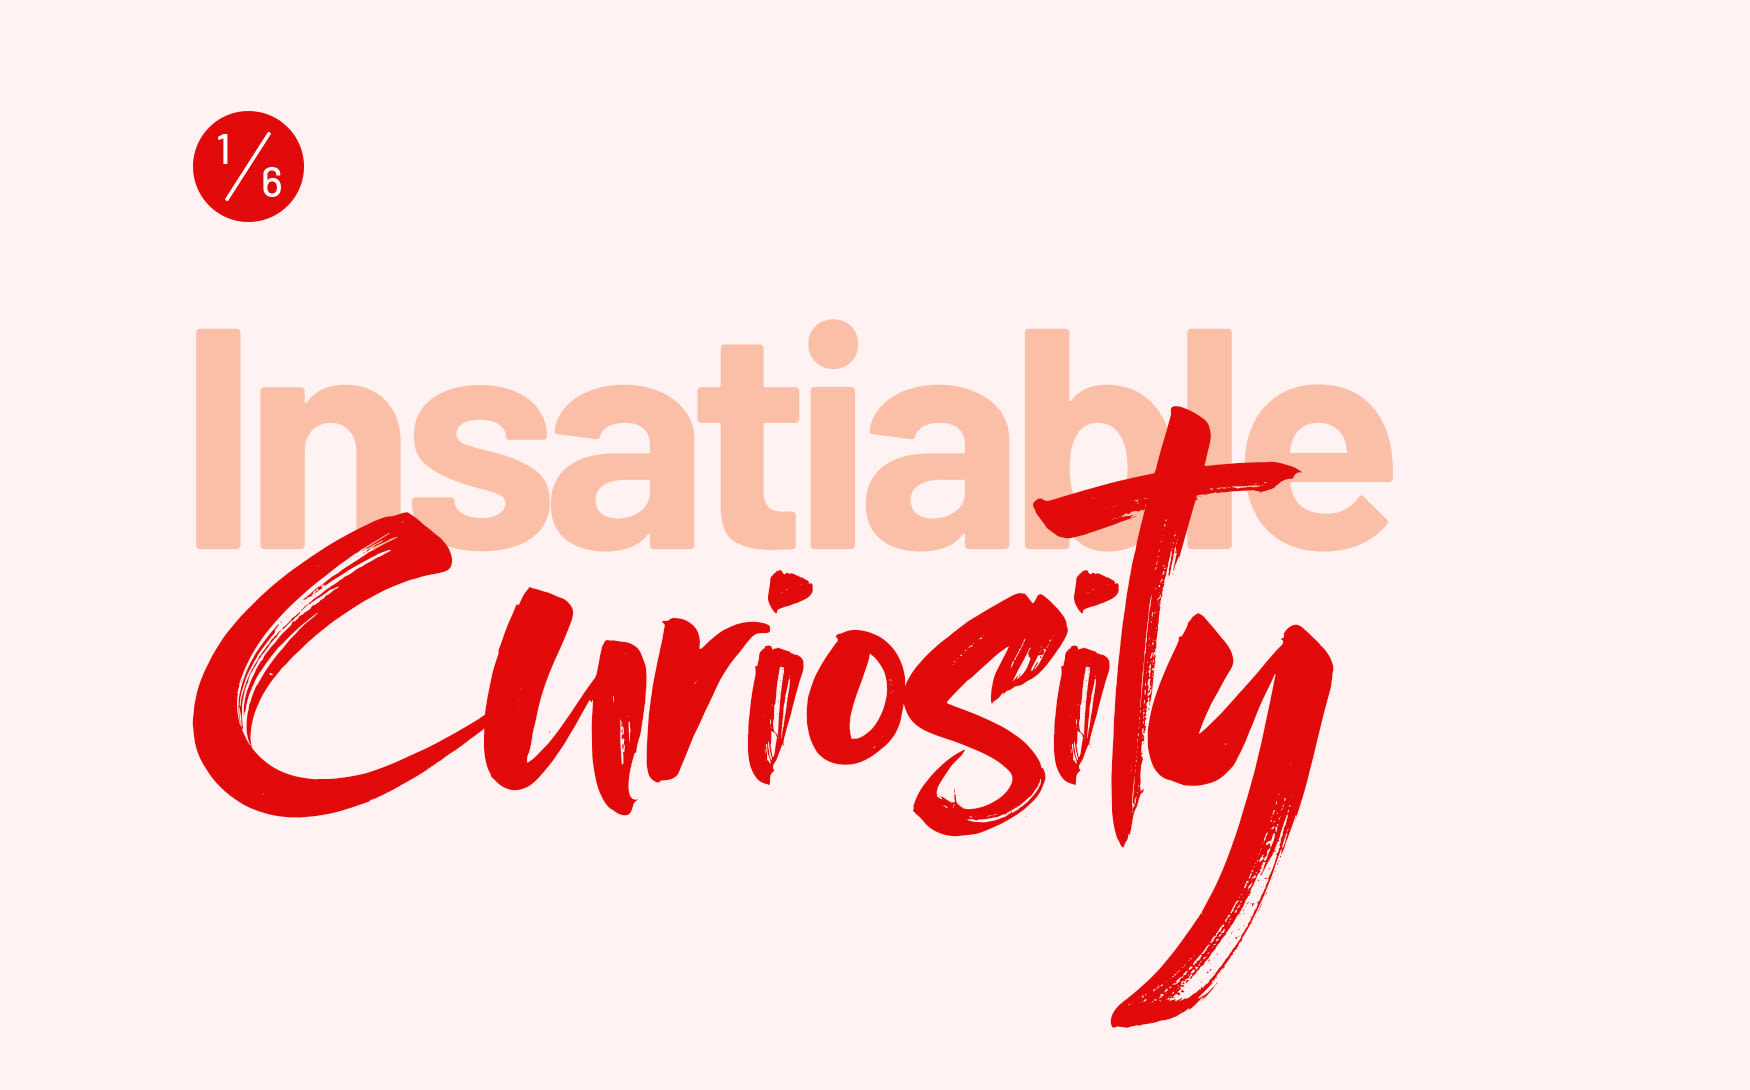 Insatiable curiosity 